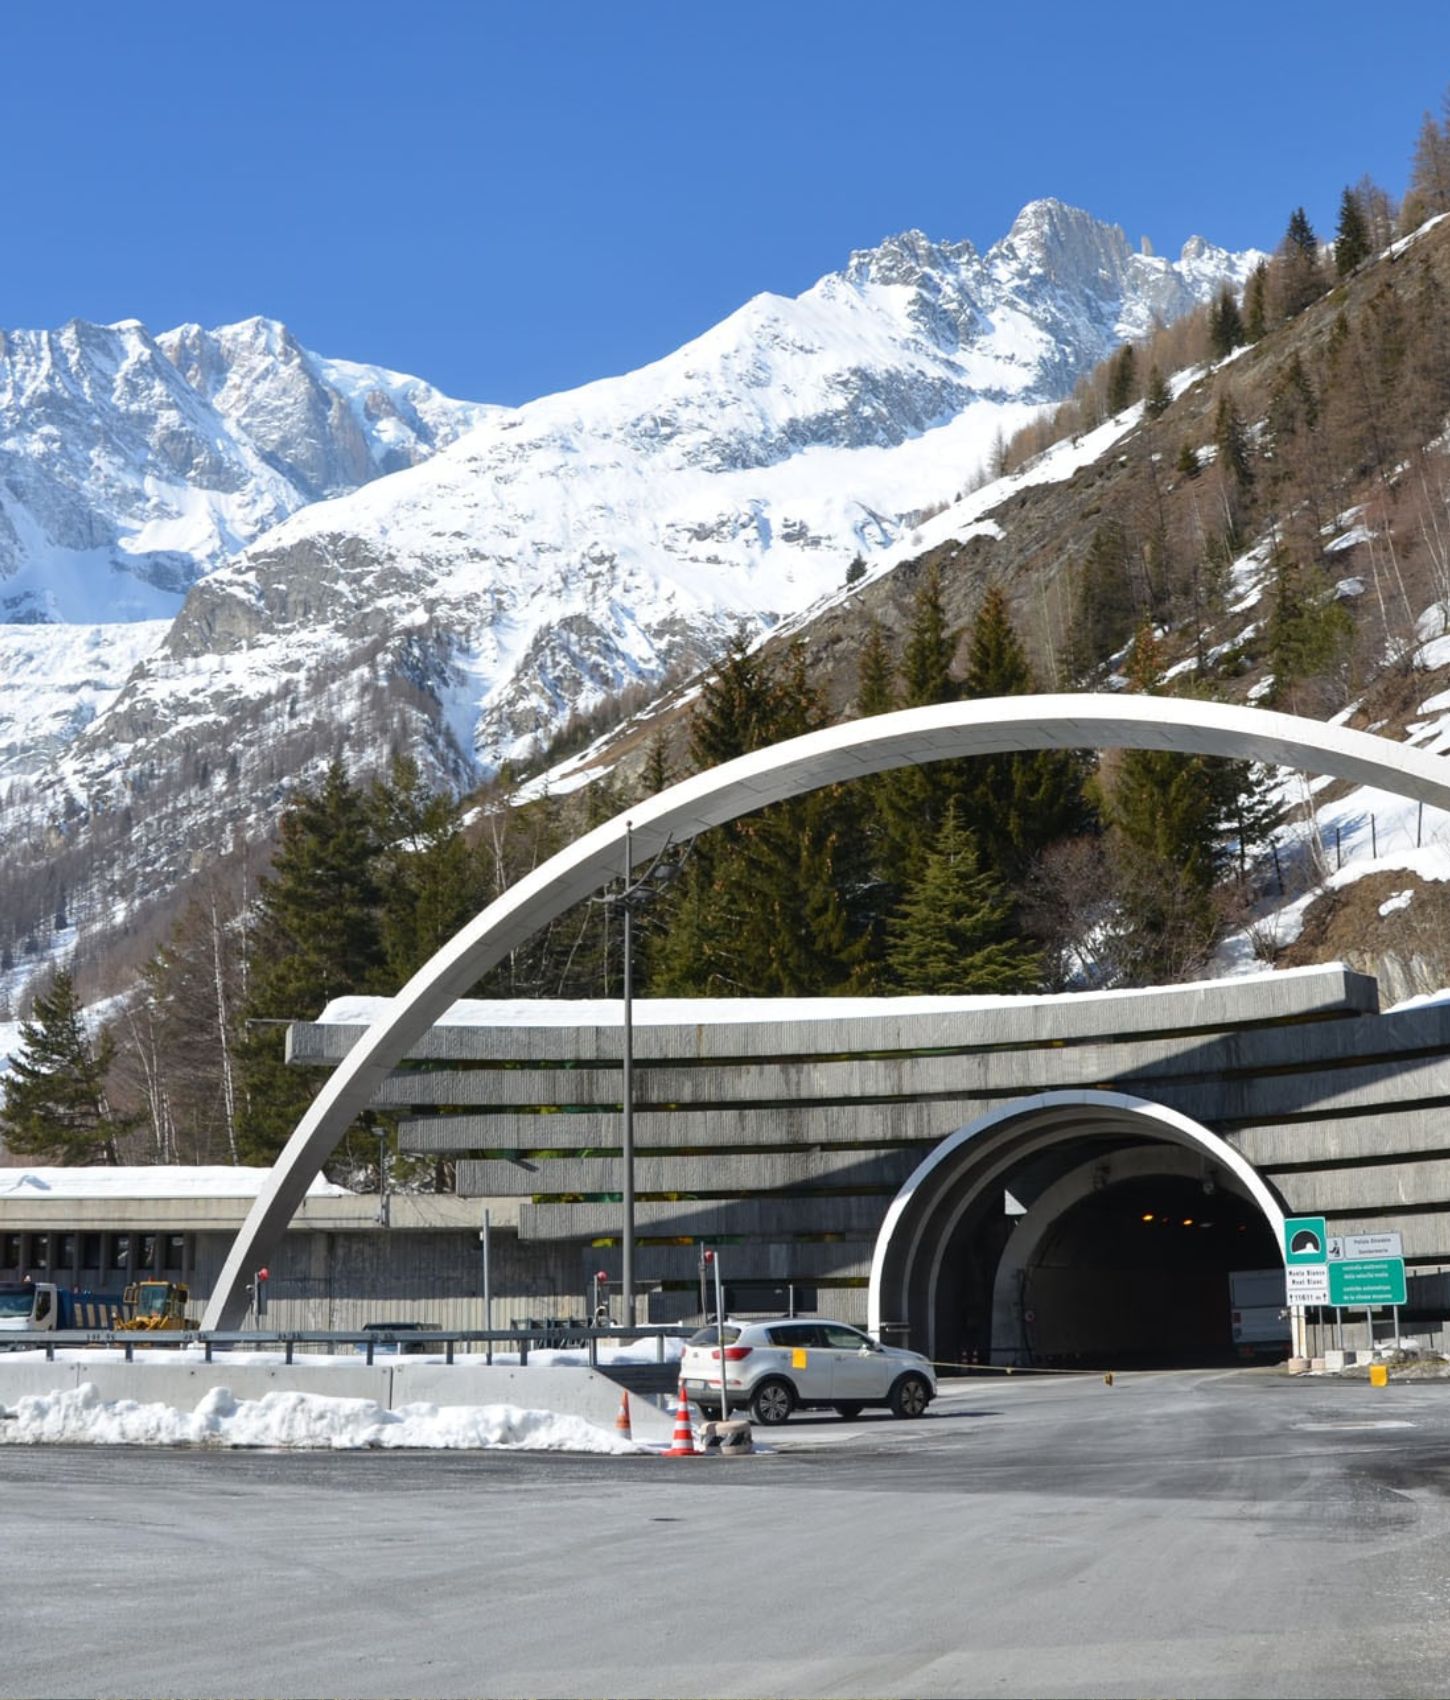 Interdicții de traficul în Tunelul Mont Blanc